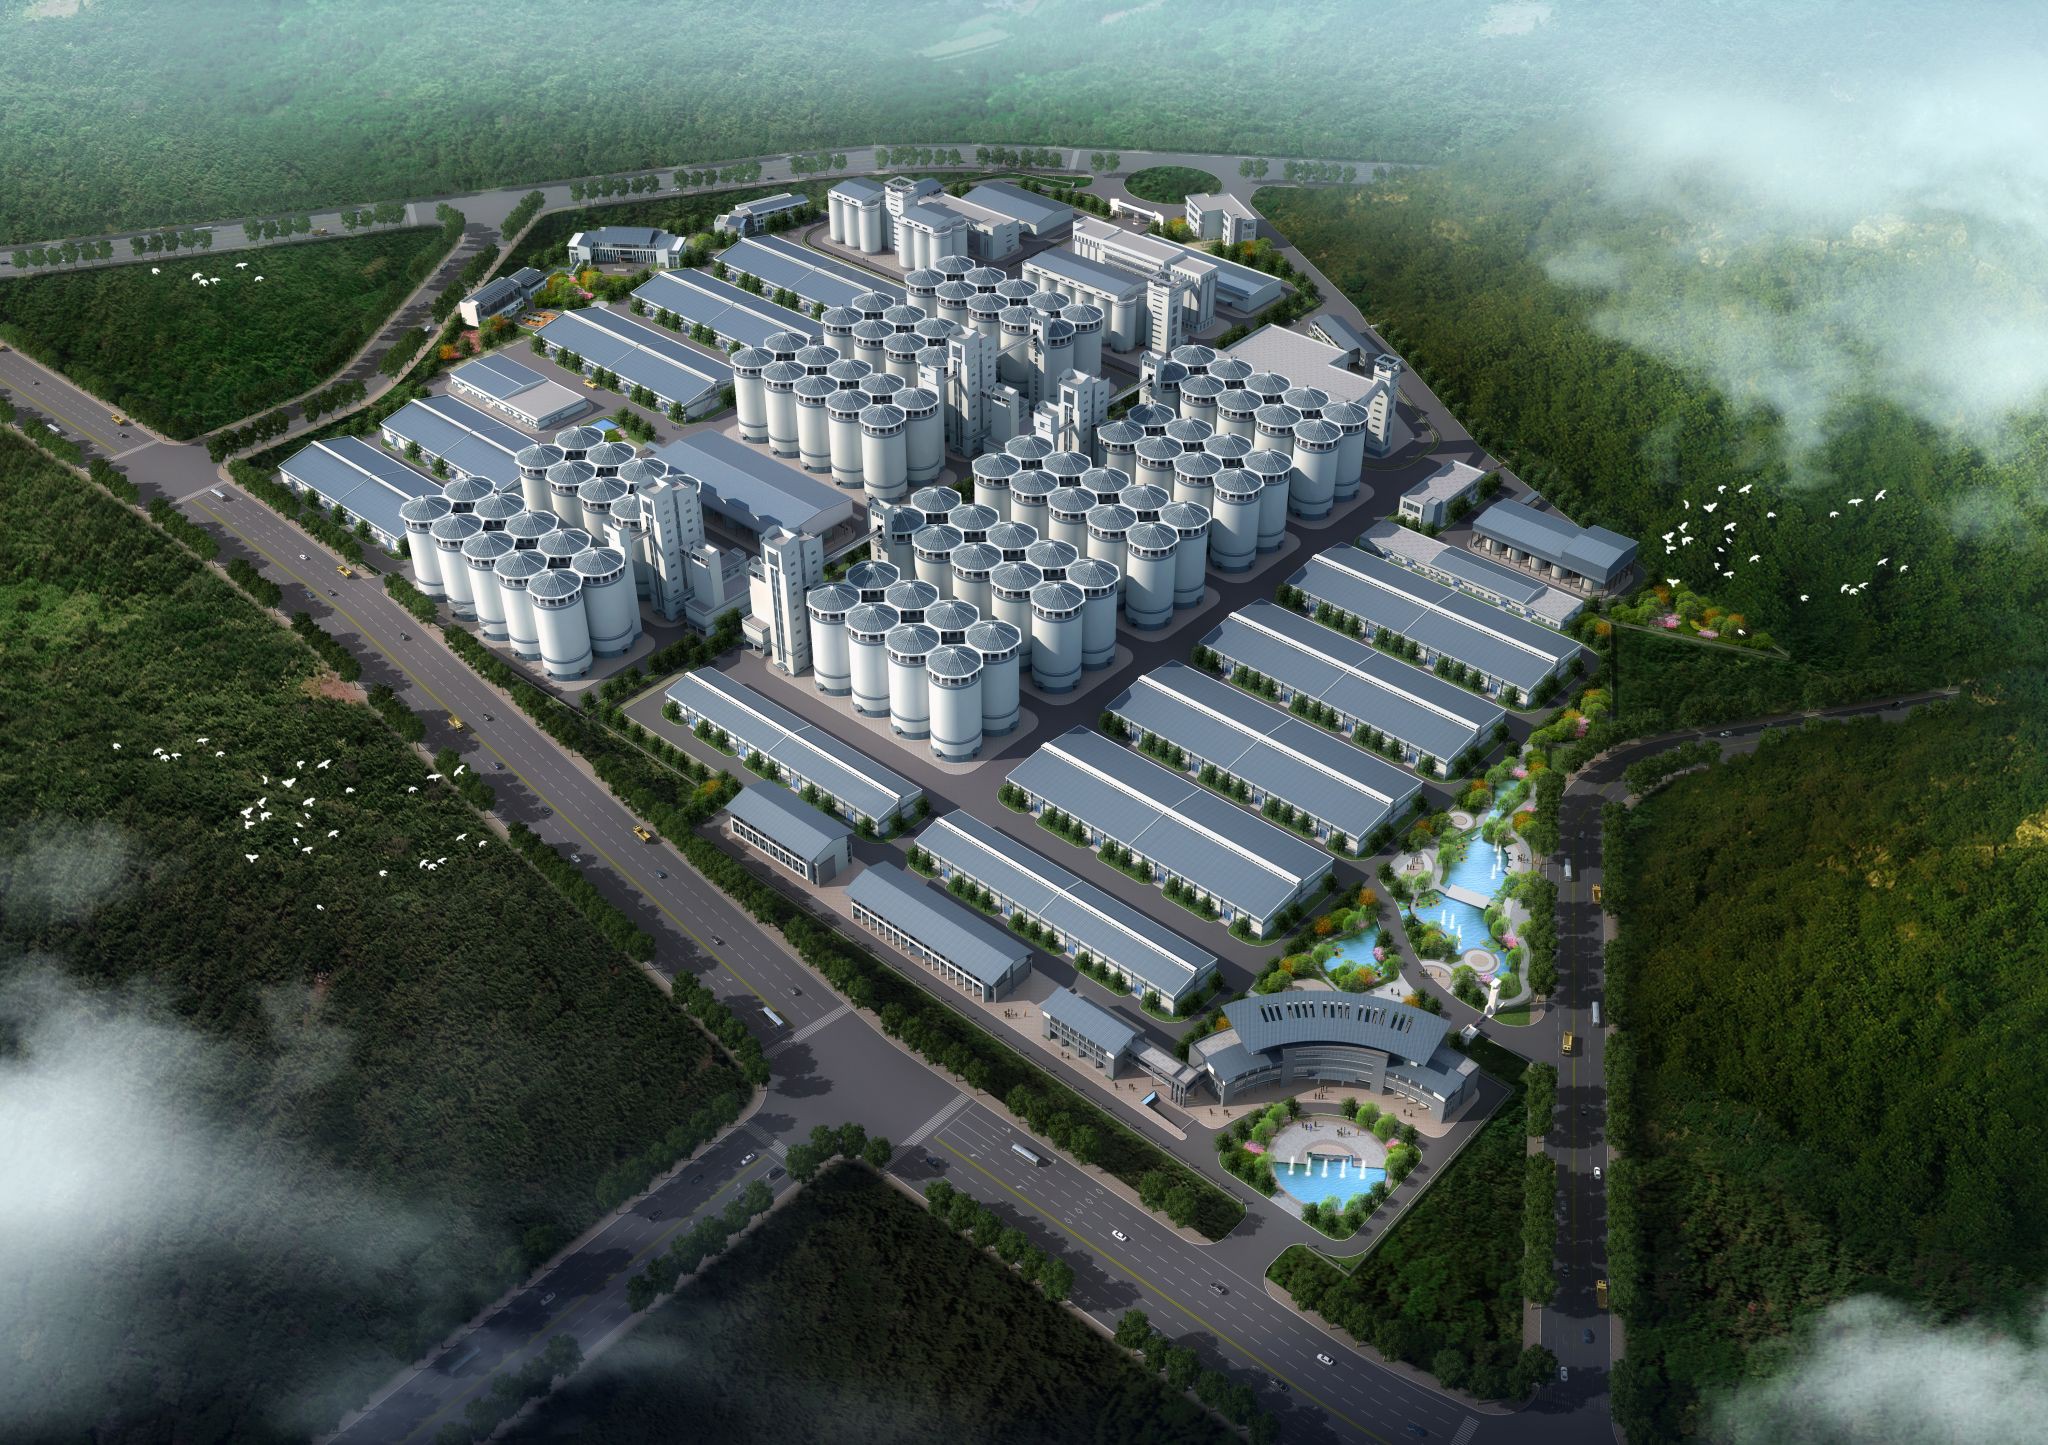 Grain storage and logistics park COFCO ET(Zhengzhou) designed for Foshan City, China